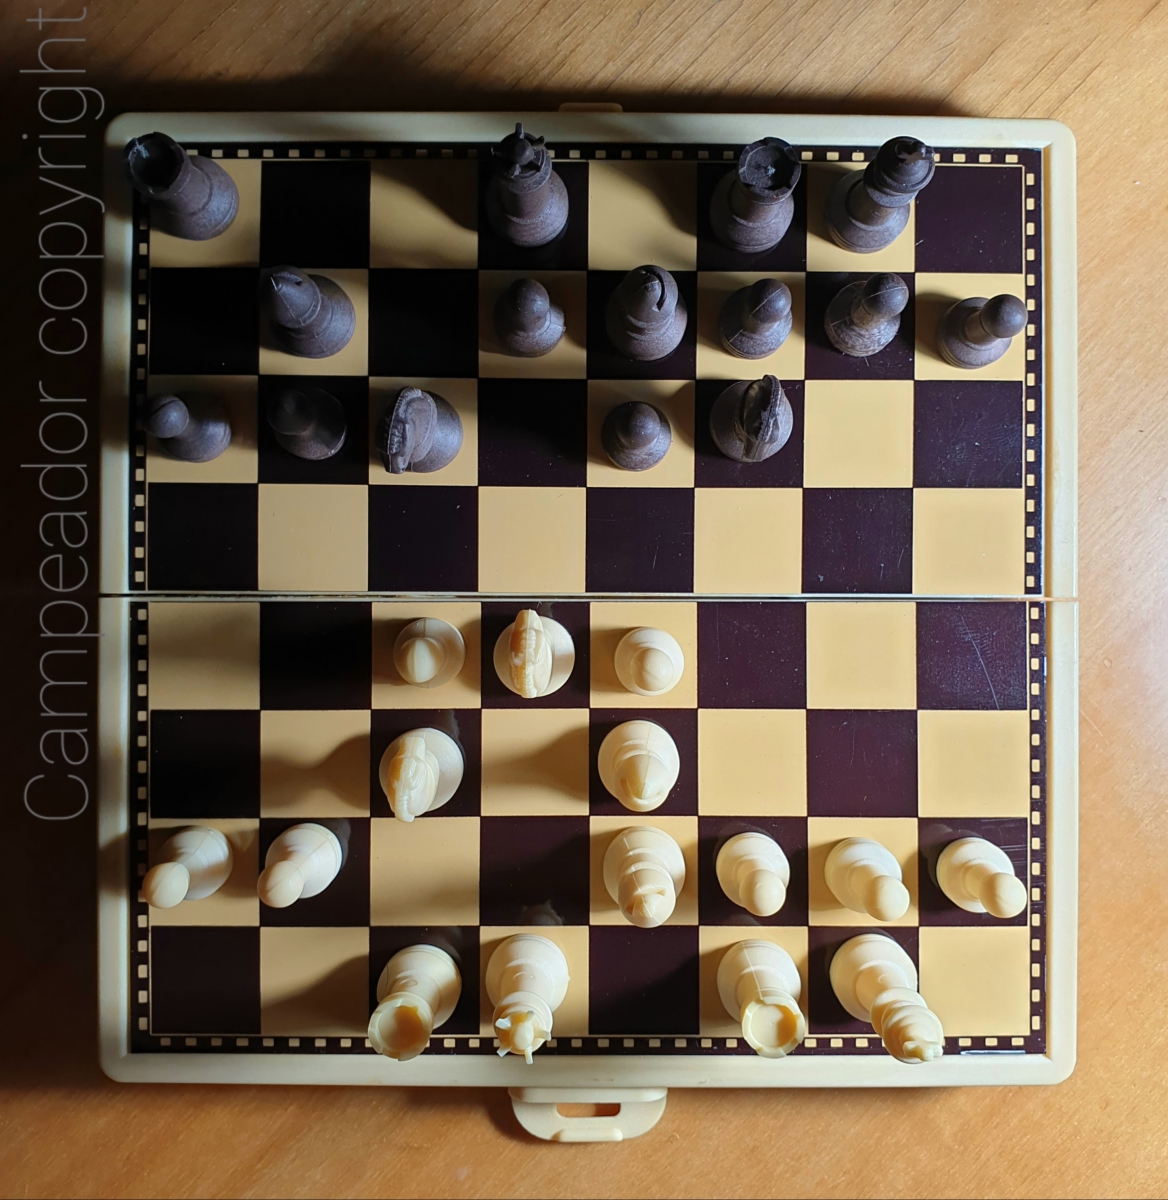 Apertura inglesa en tablero de ajedrez magnético plegable. Photo by Mario Cid.